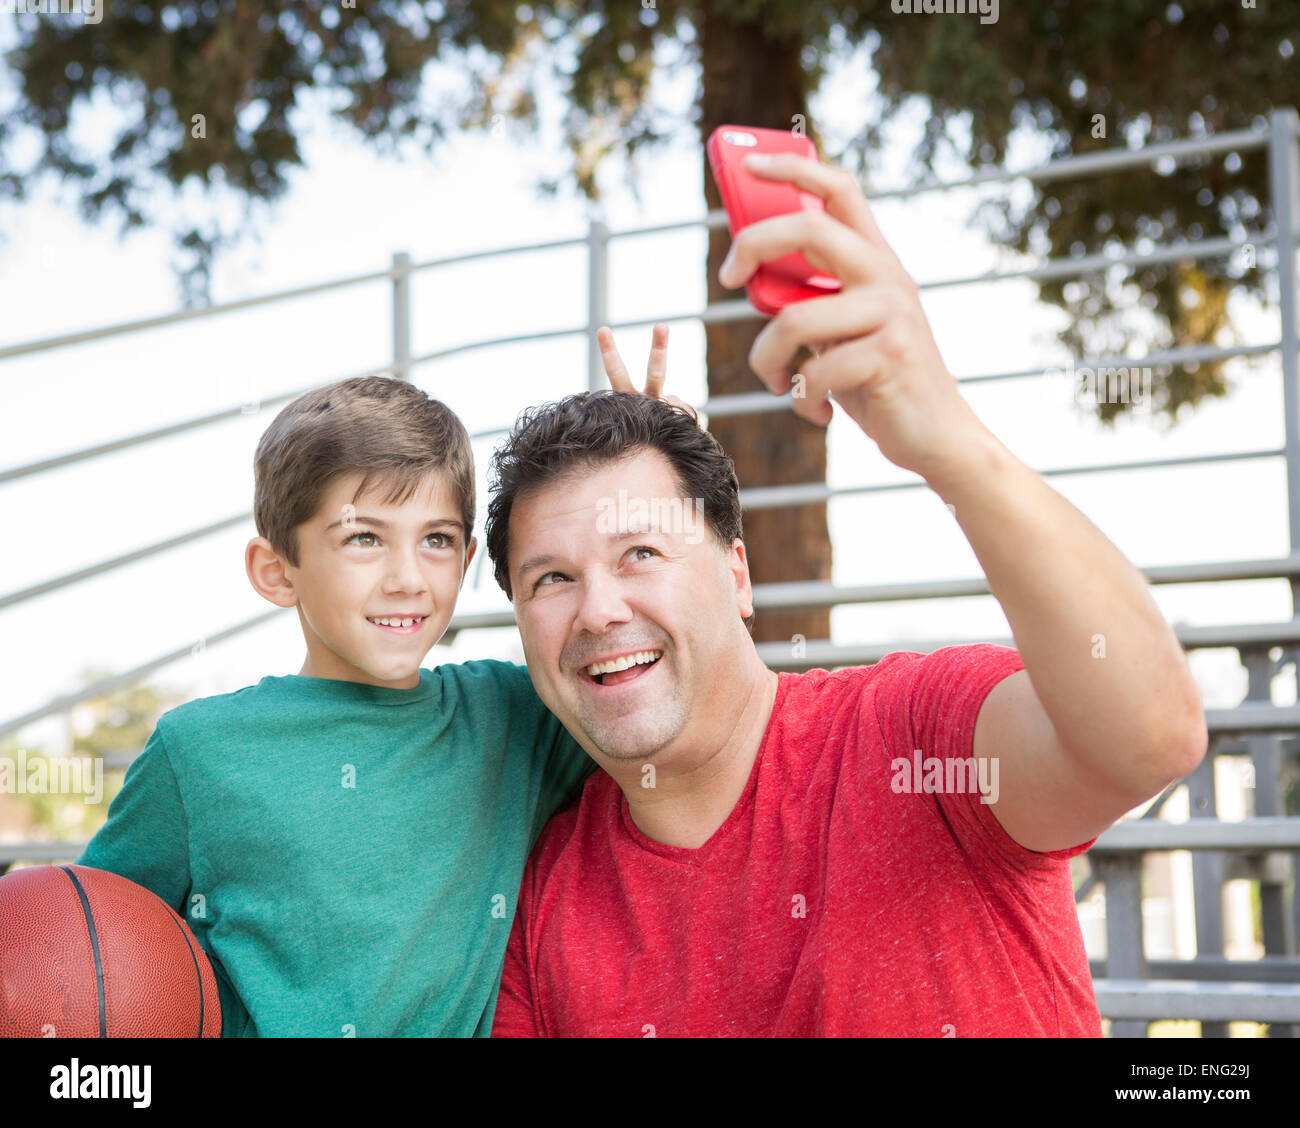 Portrait père et fils prenant cell phone photo sur des gradins Banque D'Images